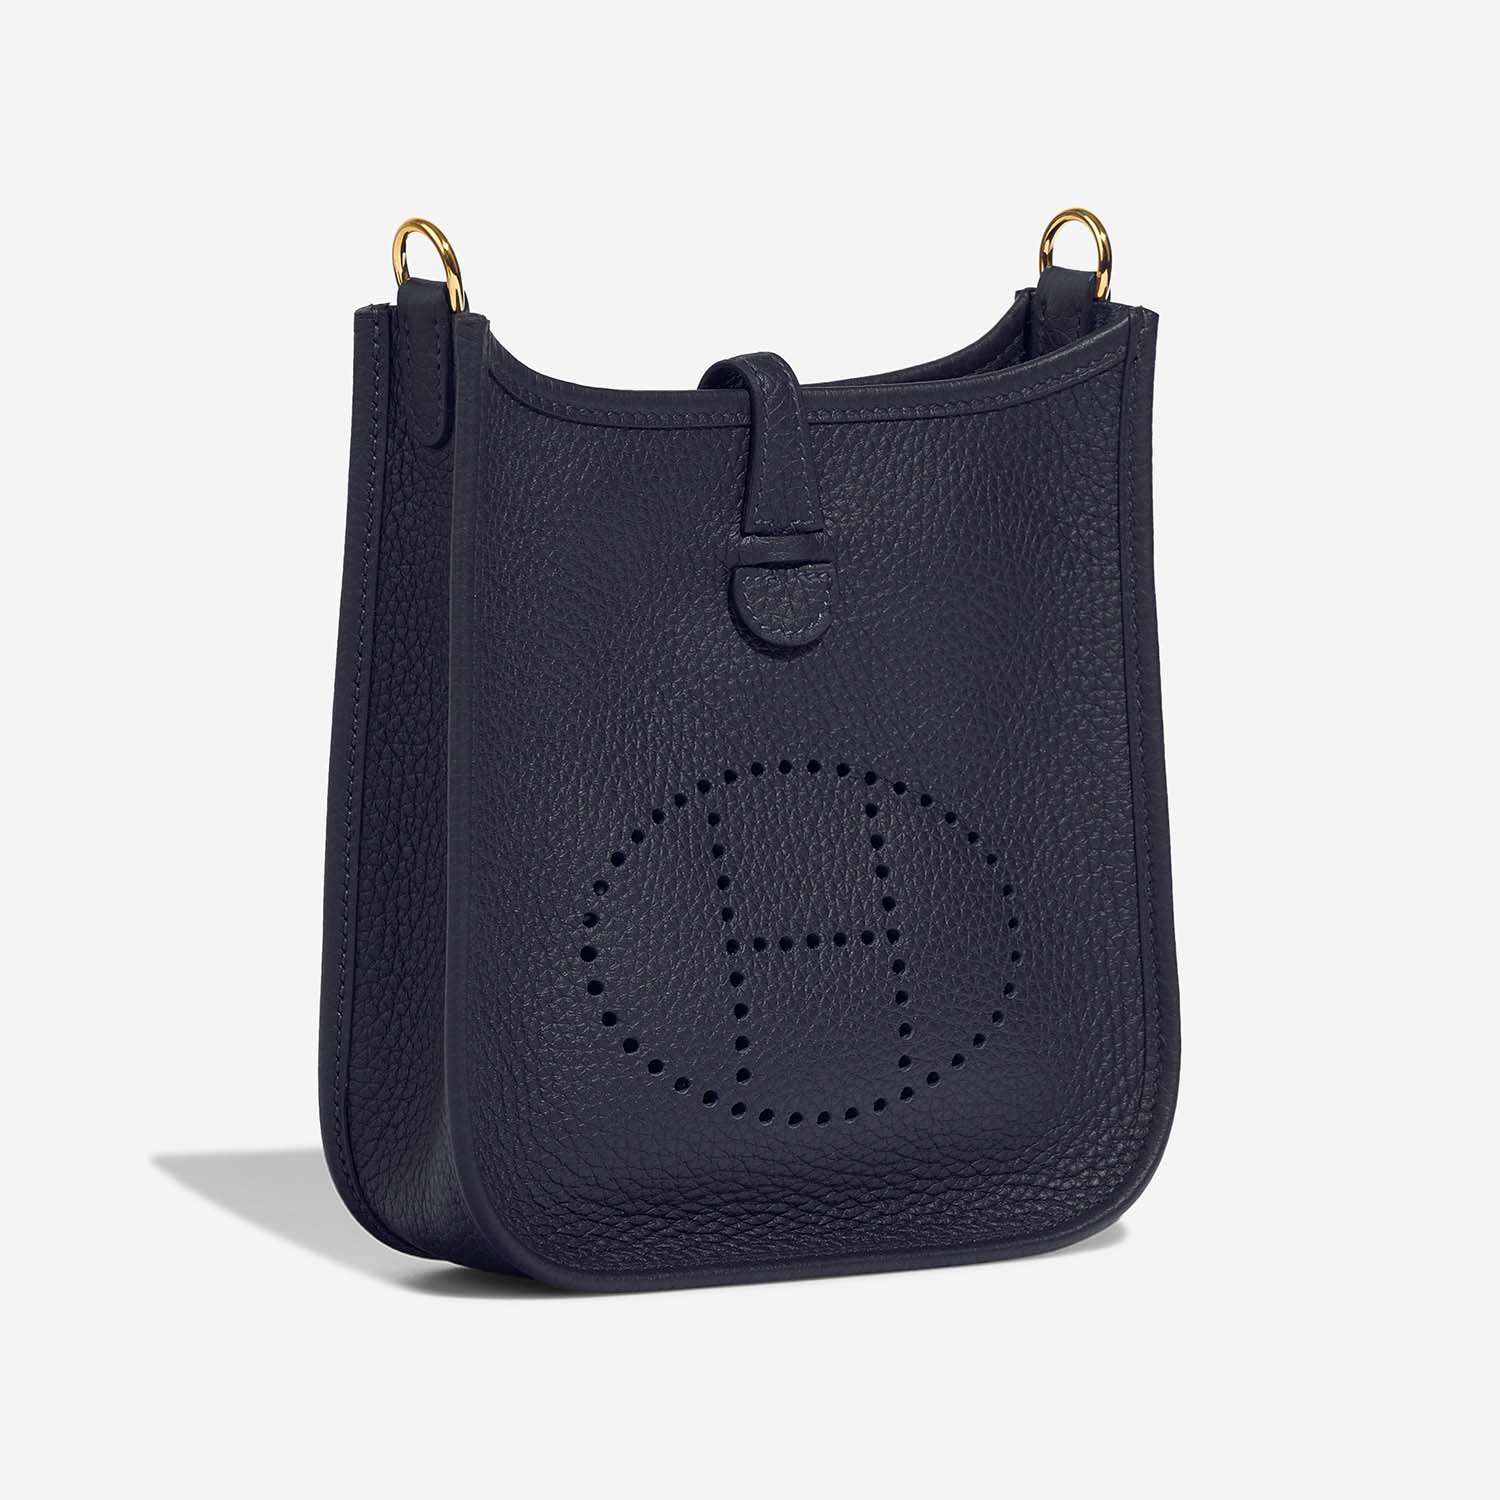 Hermès Evelyne 16 BleuNuit Side Front | Verkaufen Sie Ihre Designer-Tasche auf Saclab.com